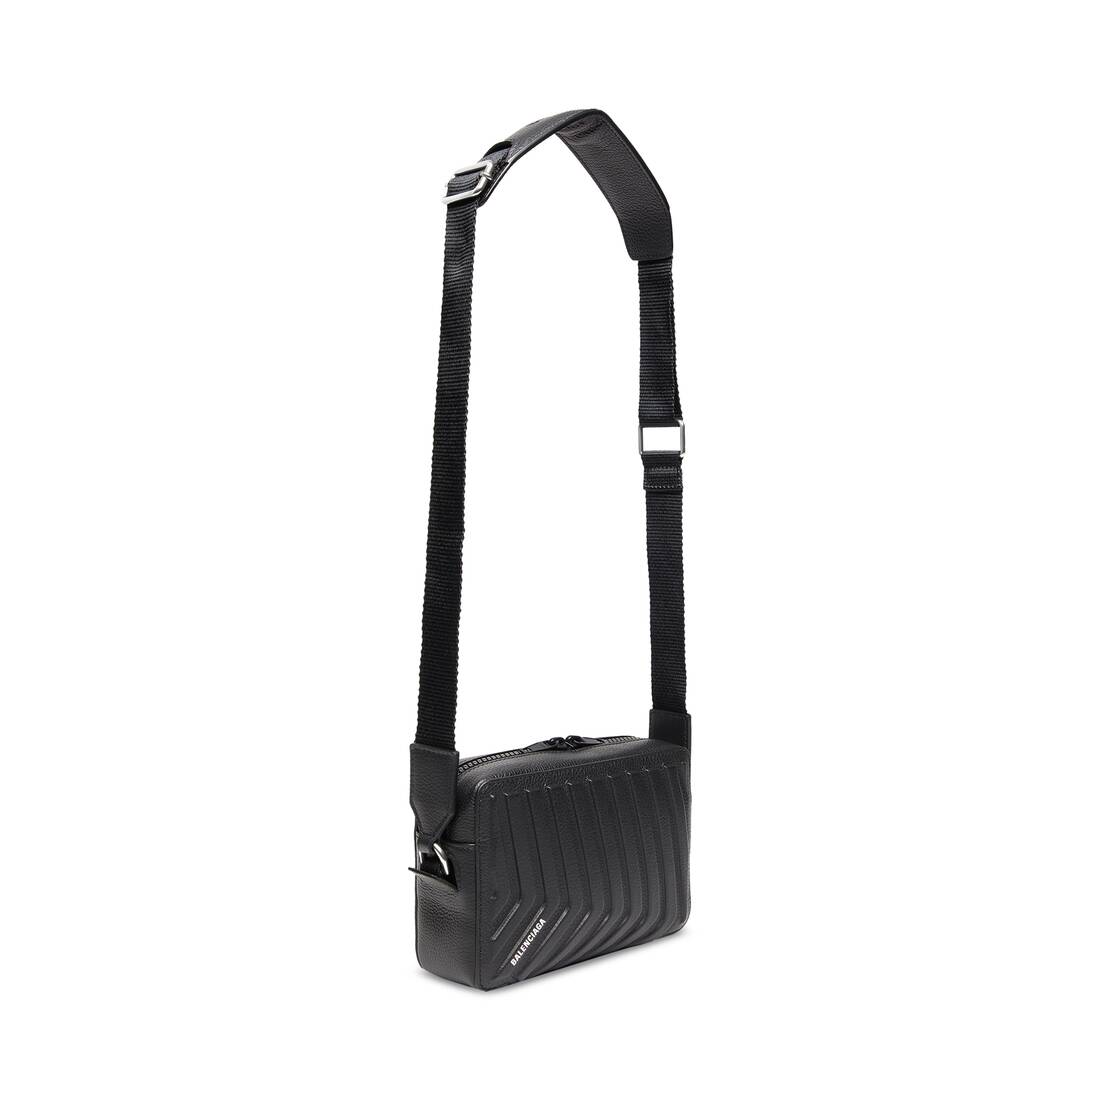 Balenciaga Car Camera Bag - Black - Men's - Calfskin & Polyester